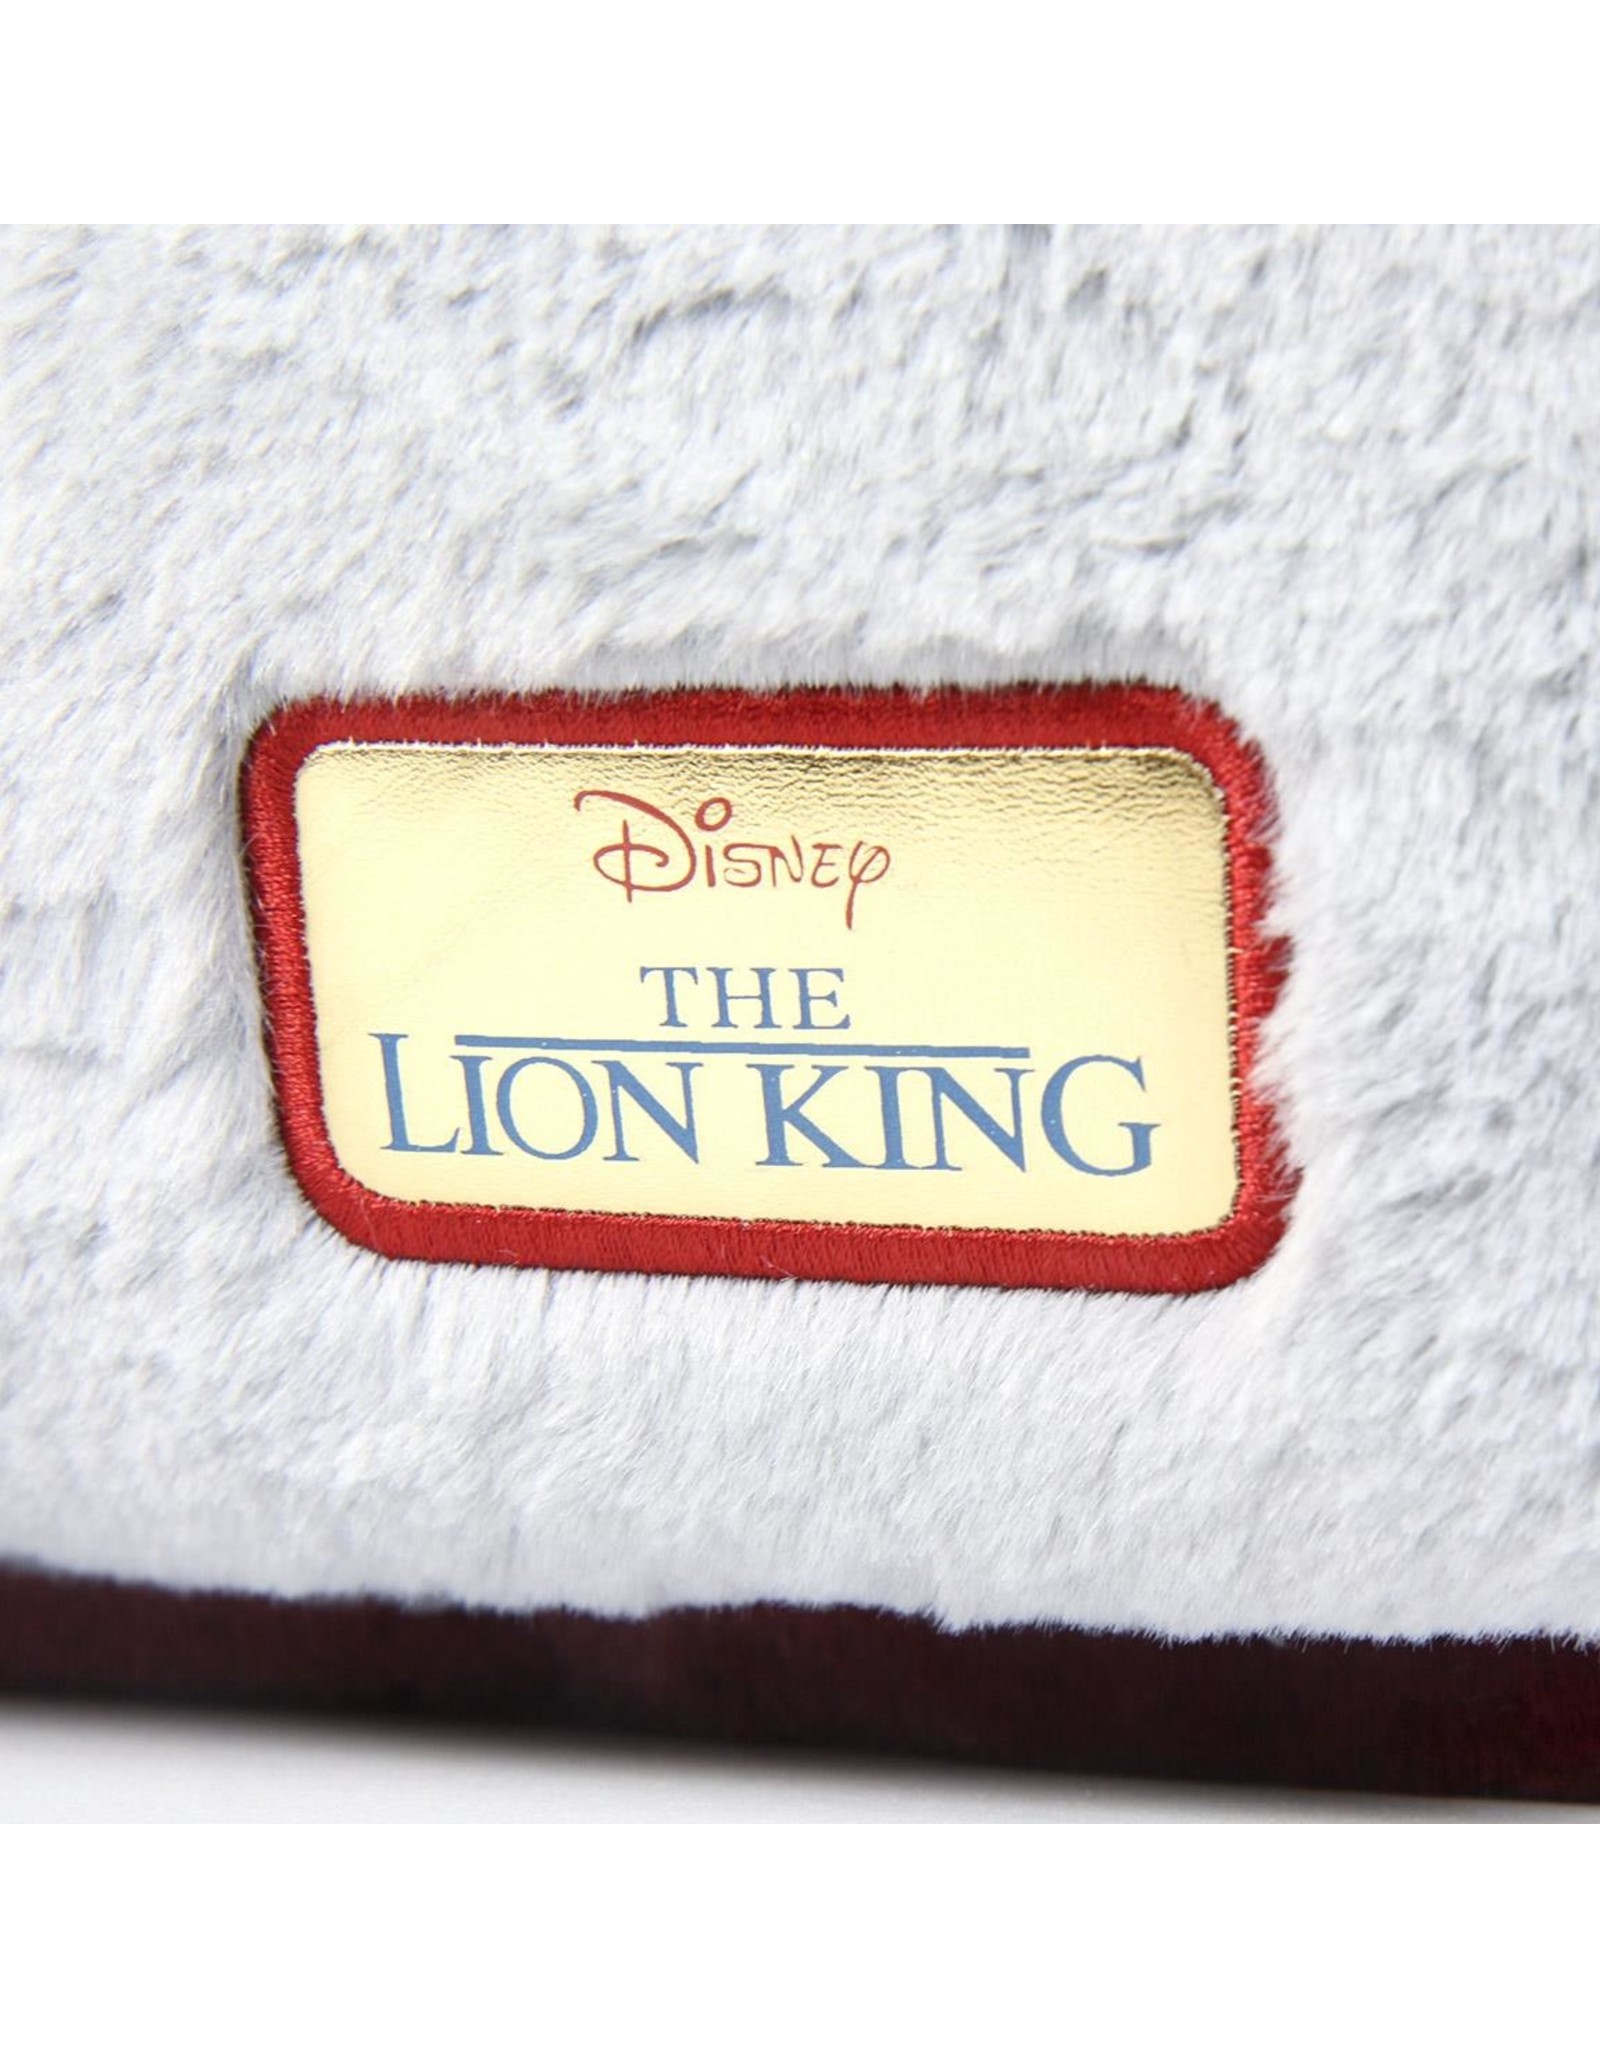 Disney Disney - Lion King - Rugzak Bordeaux Rood - Hoogte 36cm